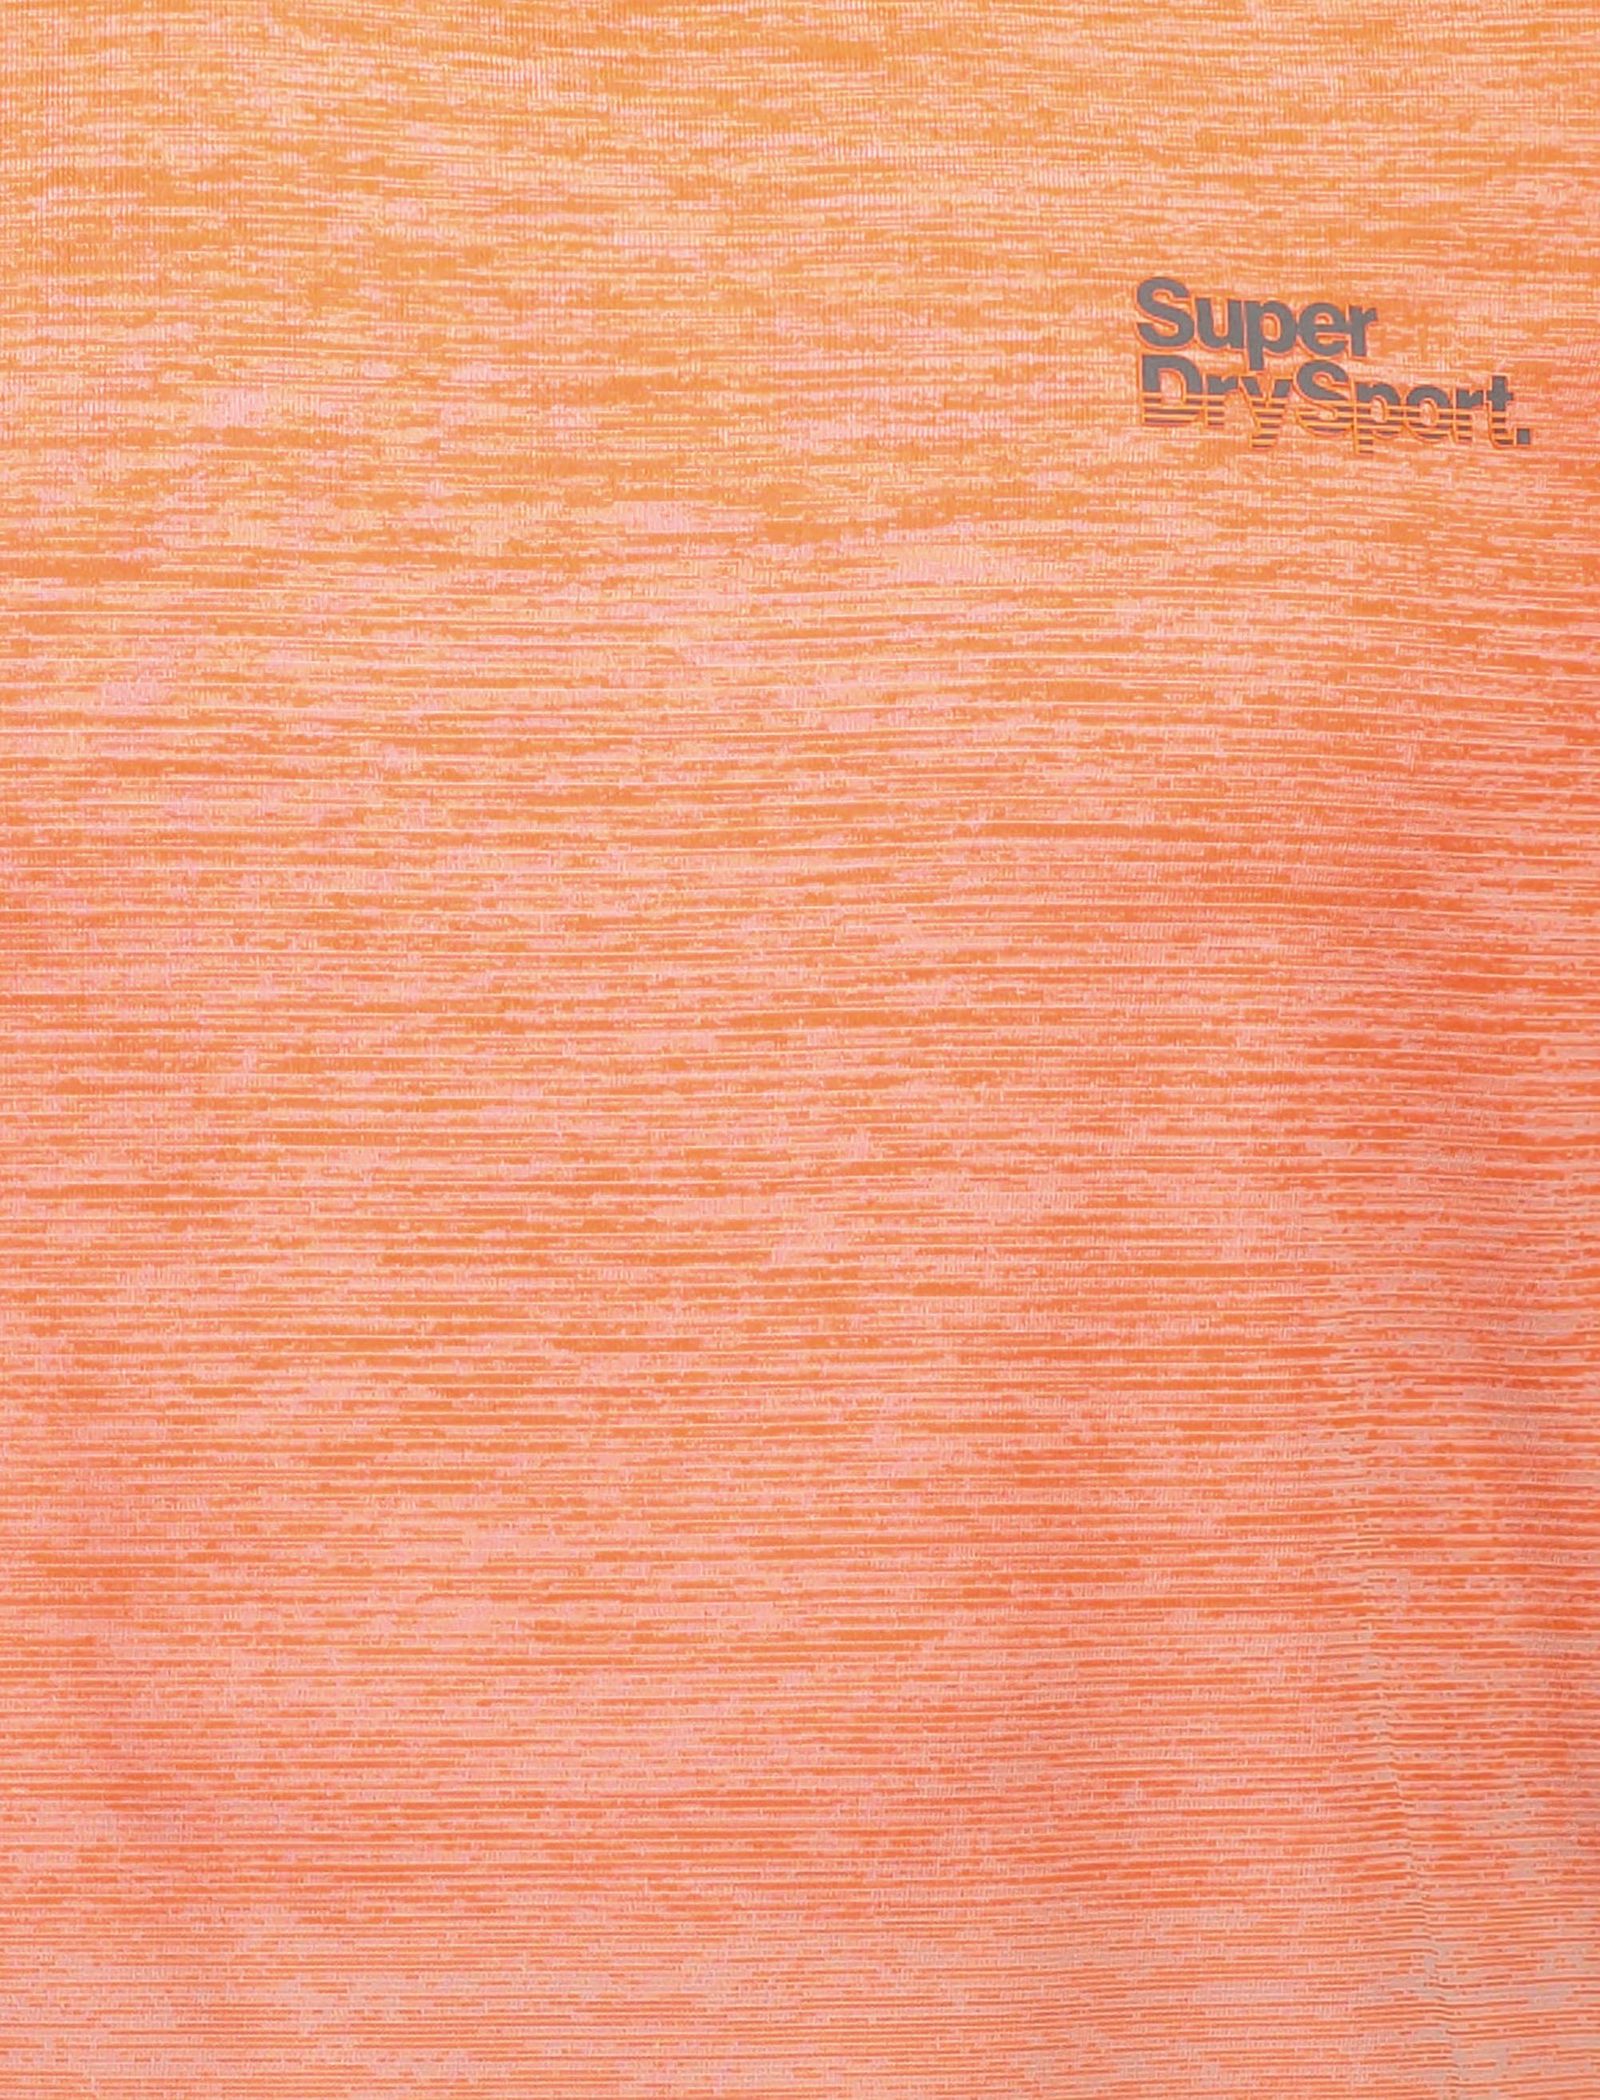 تی شرت یقه گرد مردانه - سوپردرای - نارنجي - 5